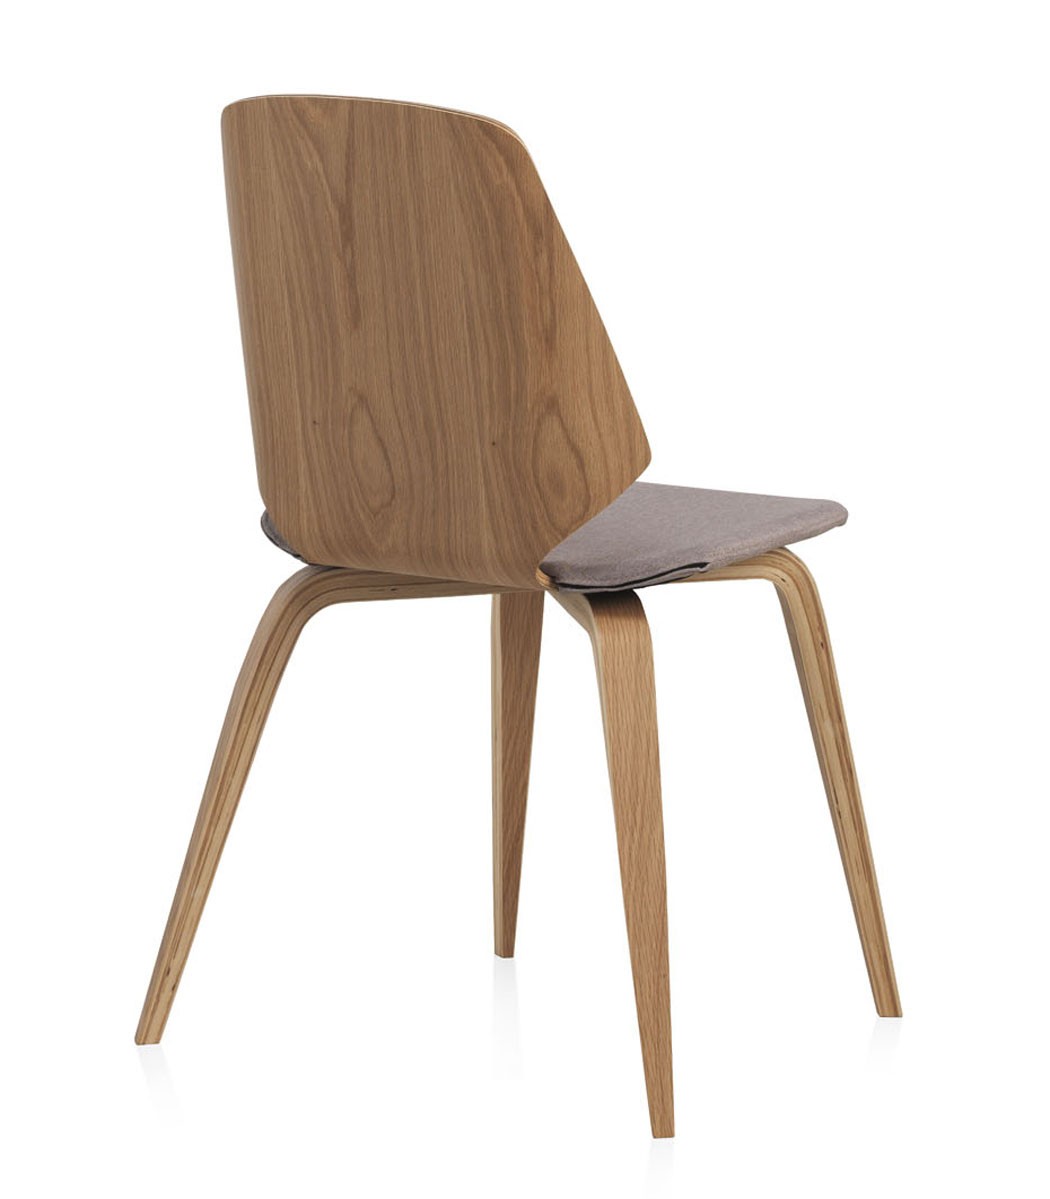 Conforto e estilo com a cadeira Vigo! Esta peça moderna e elegante é perfeita para adicionar um toque de sofisticação a qualquer espaço.